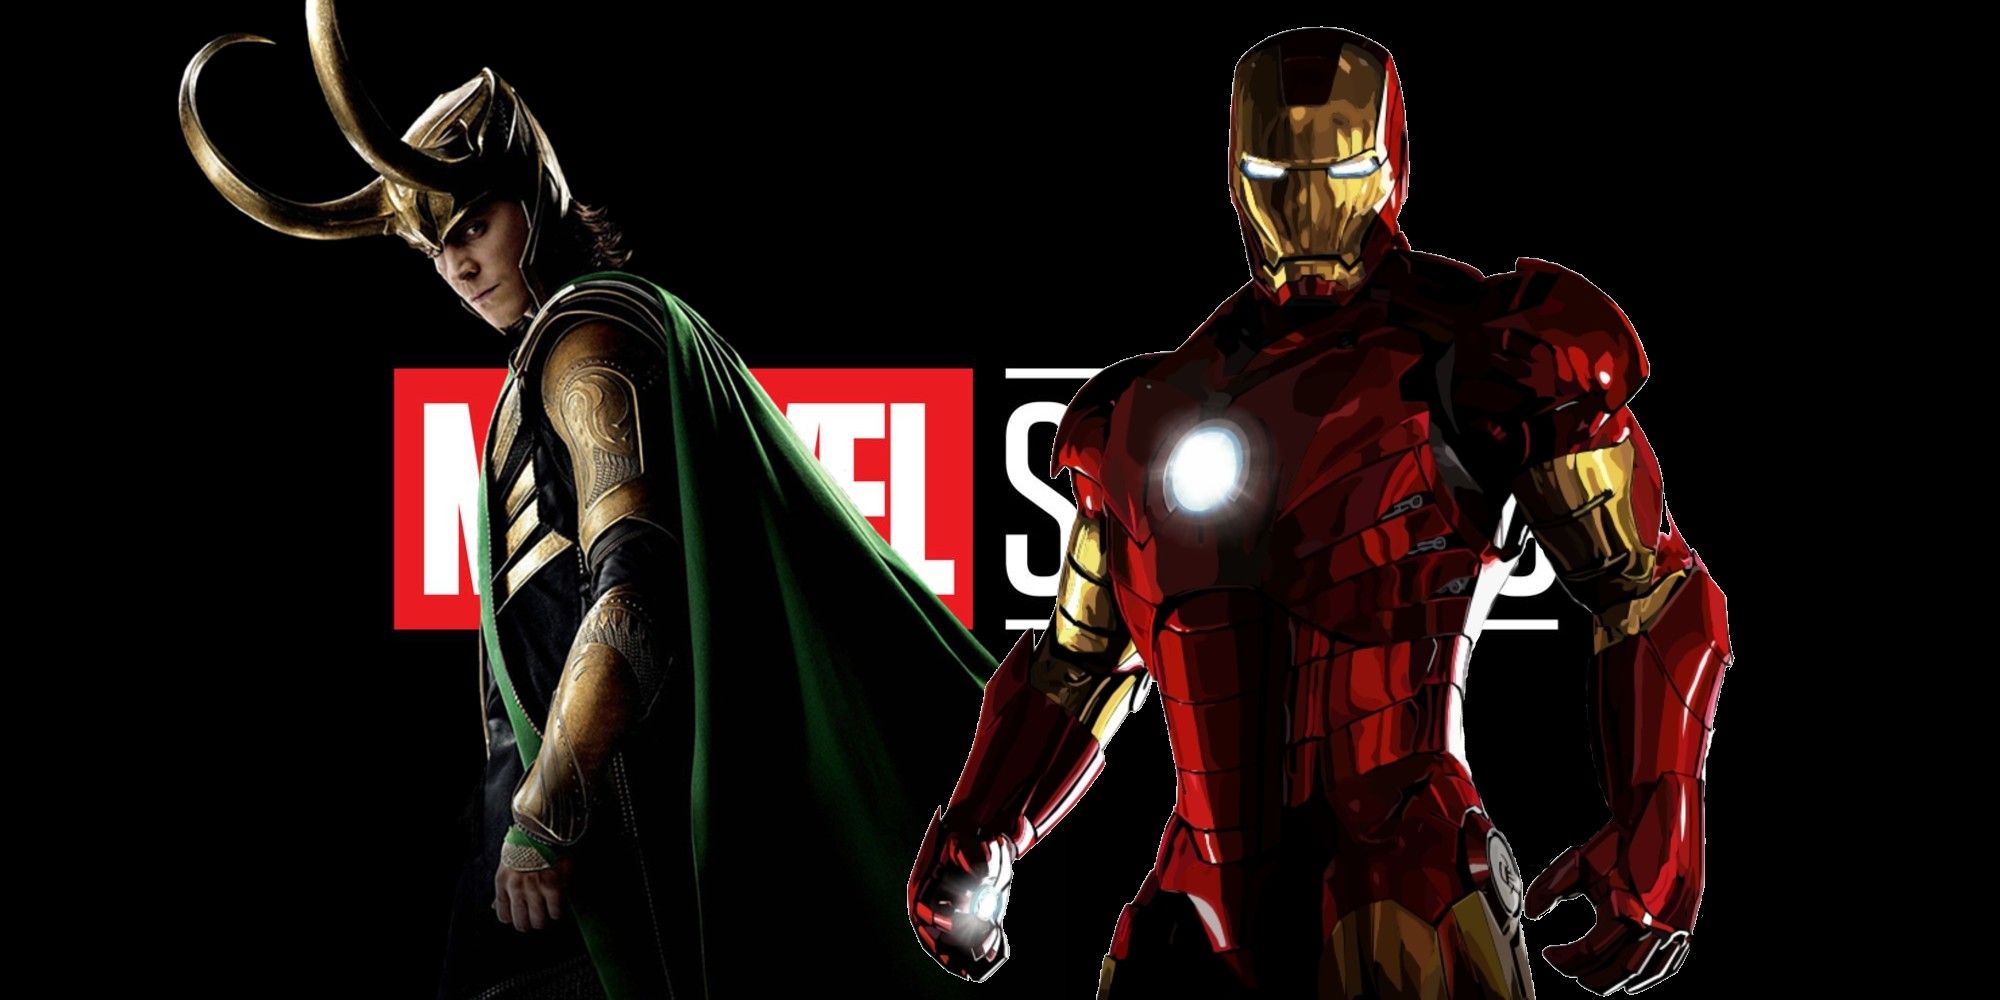 MCU Iron Man and Loki